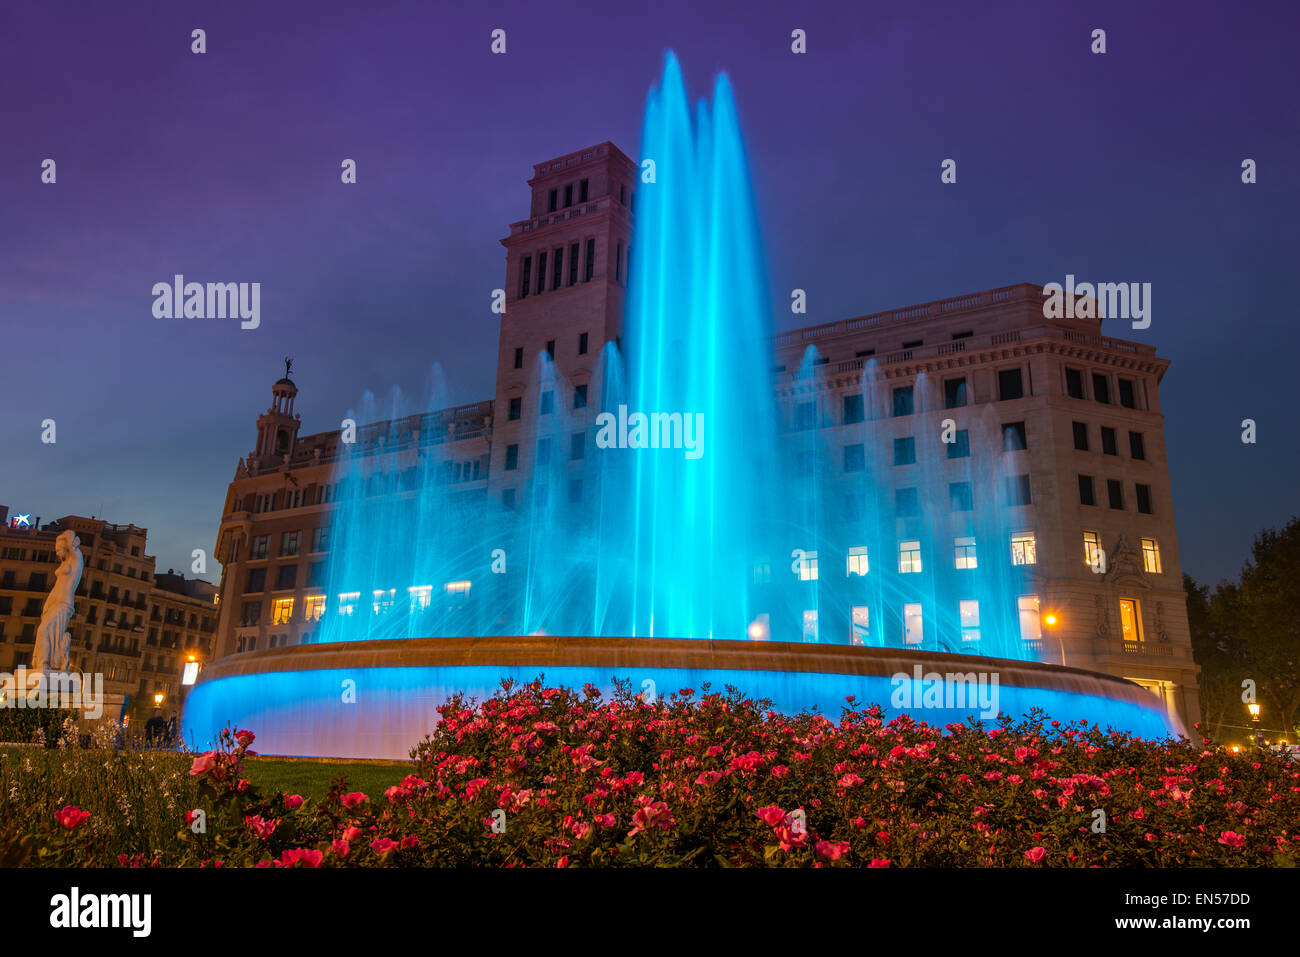 Light show at the new Plaza Catalunya fountain, Barcelona, Catalonia, Spain Stock Photo